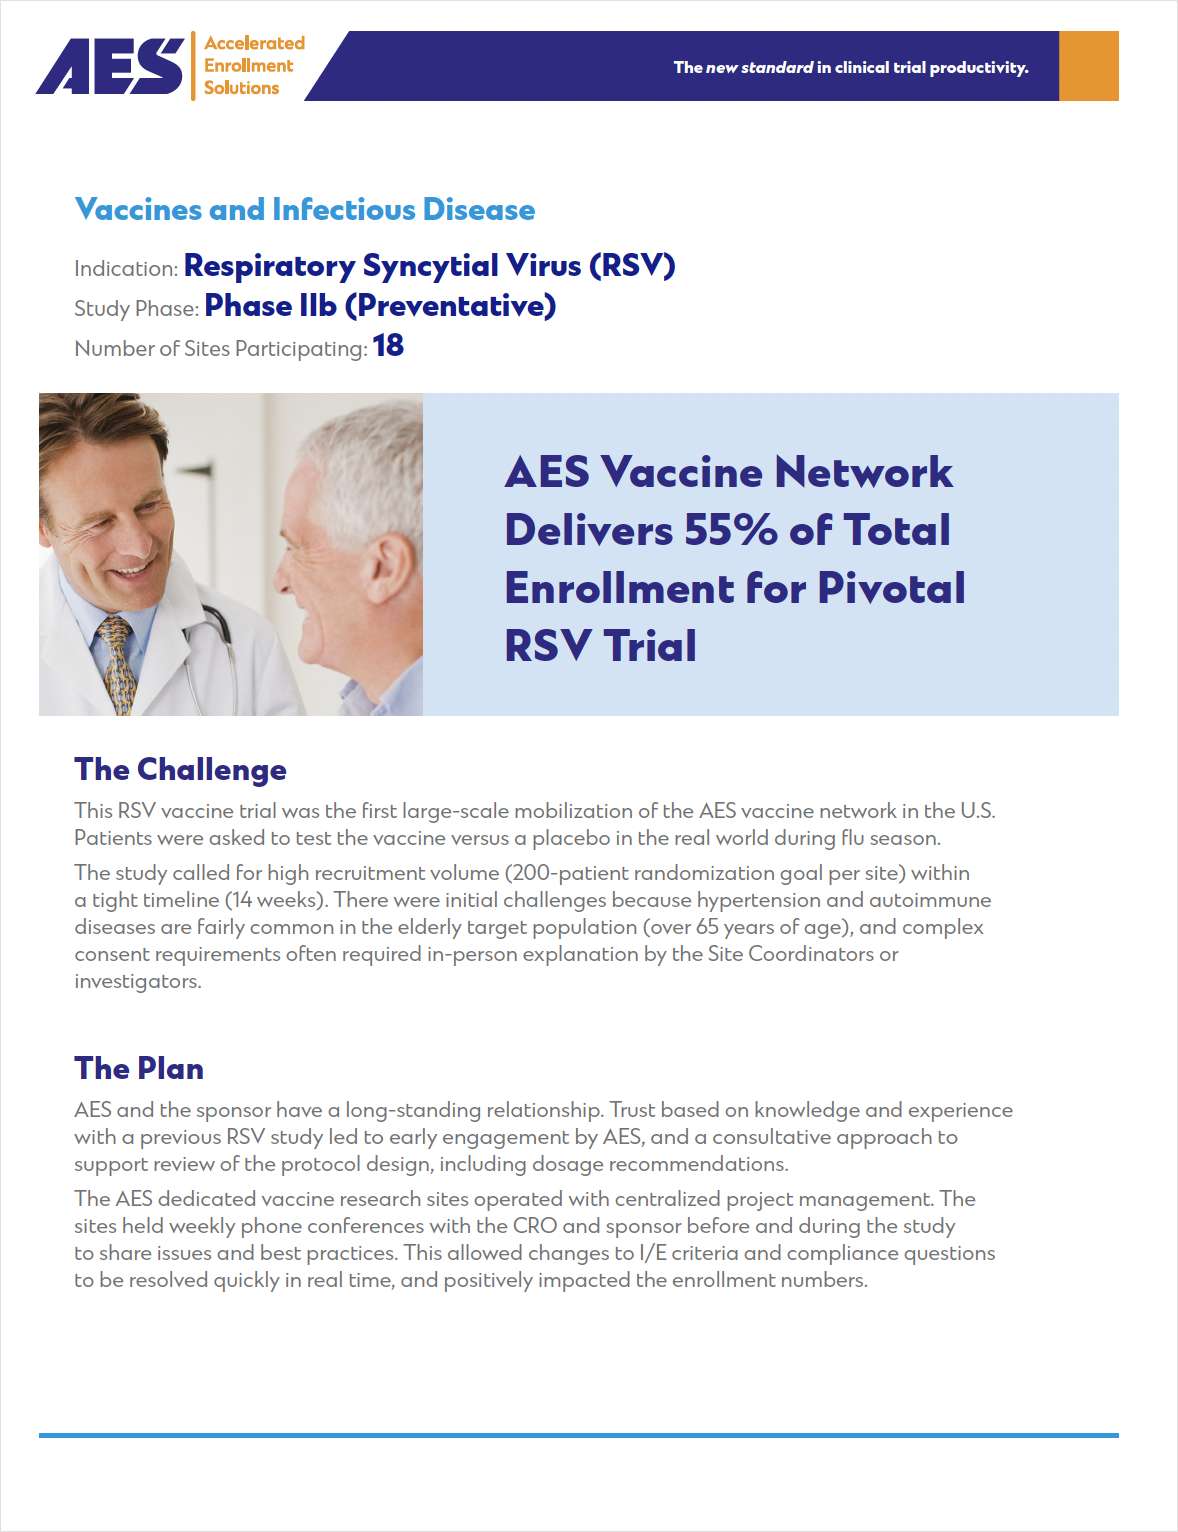 RSV Vaccine: Pivotal Study Meets Patient Enrollment Goals